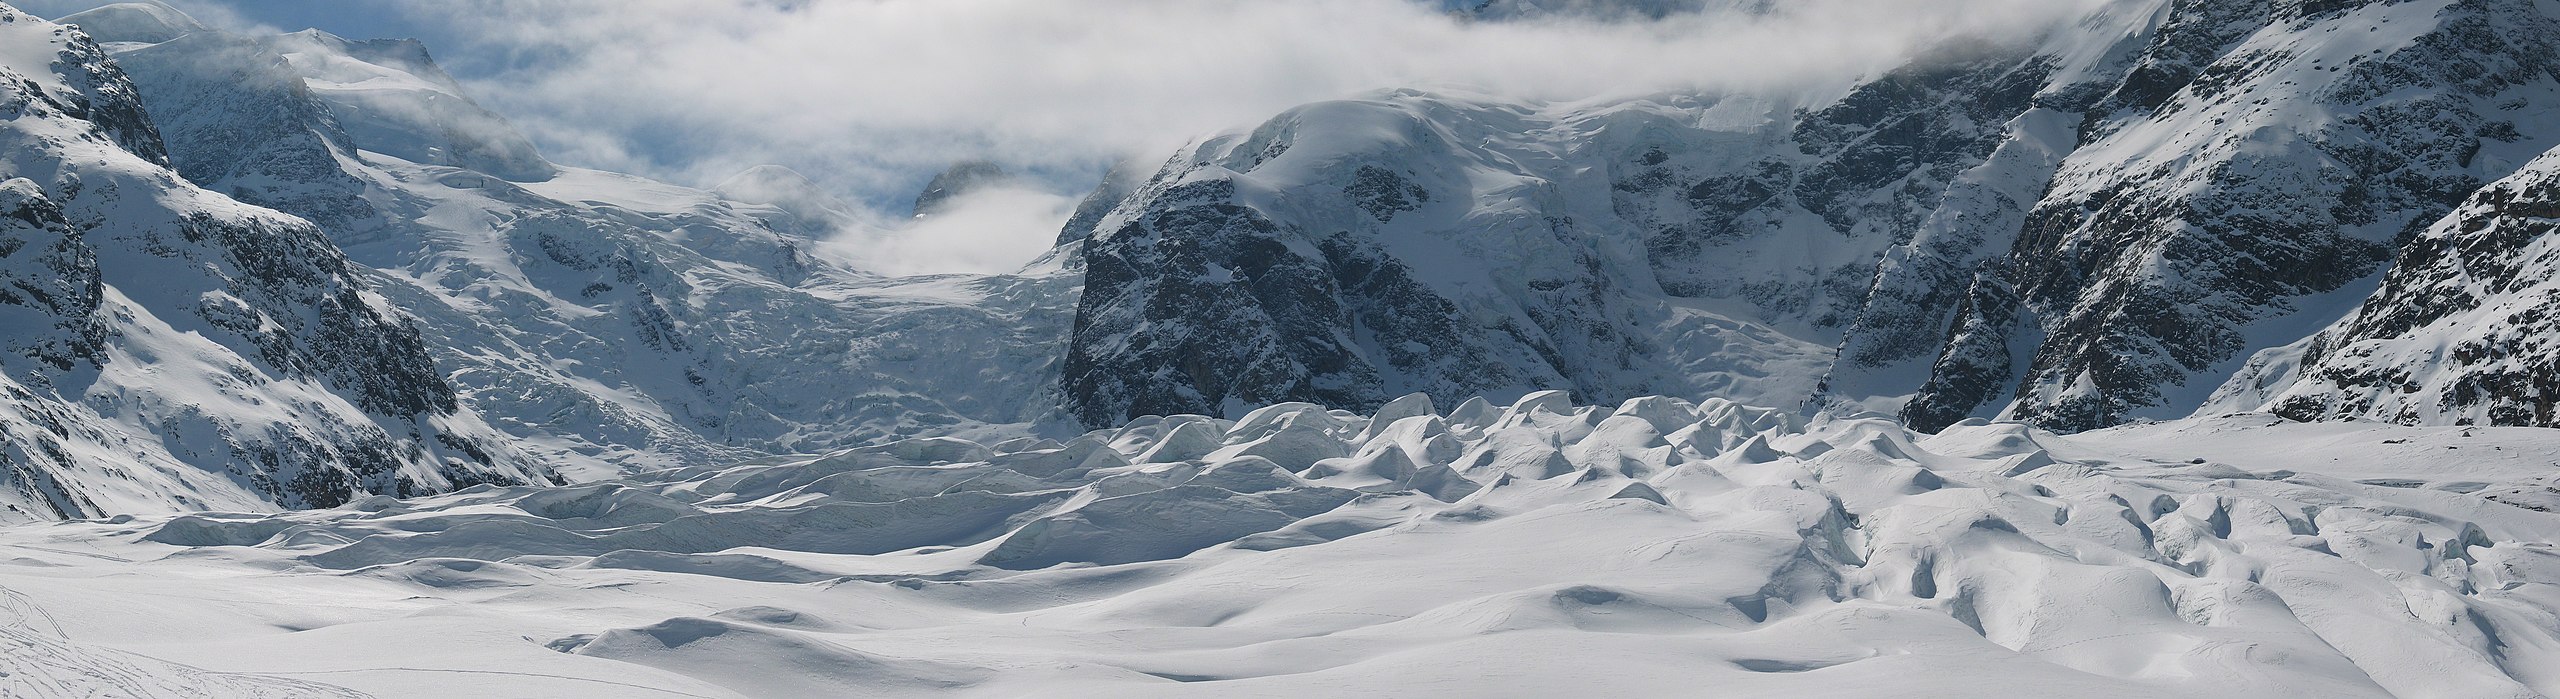 L’Allemagne pourrait perdre ses glaciers alpins dans les 50 prochaines années, avertit un expert